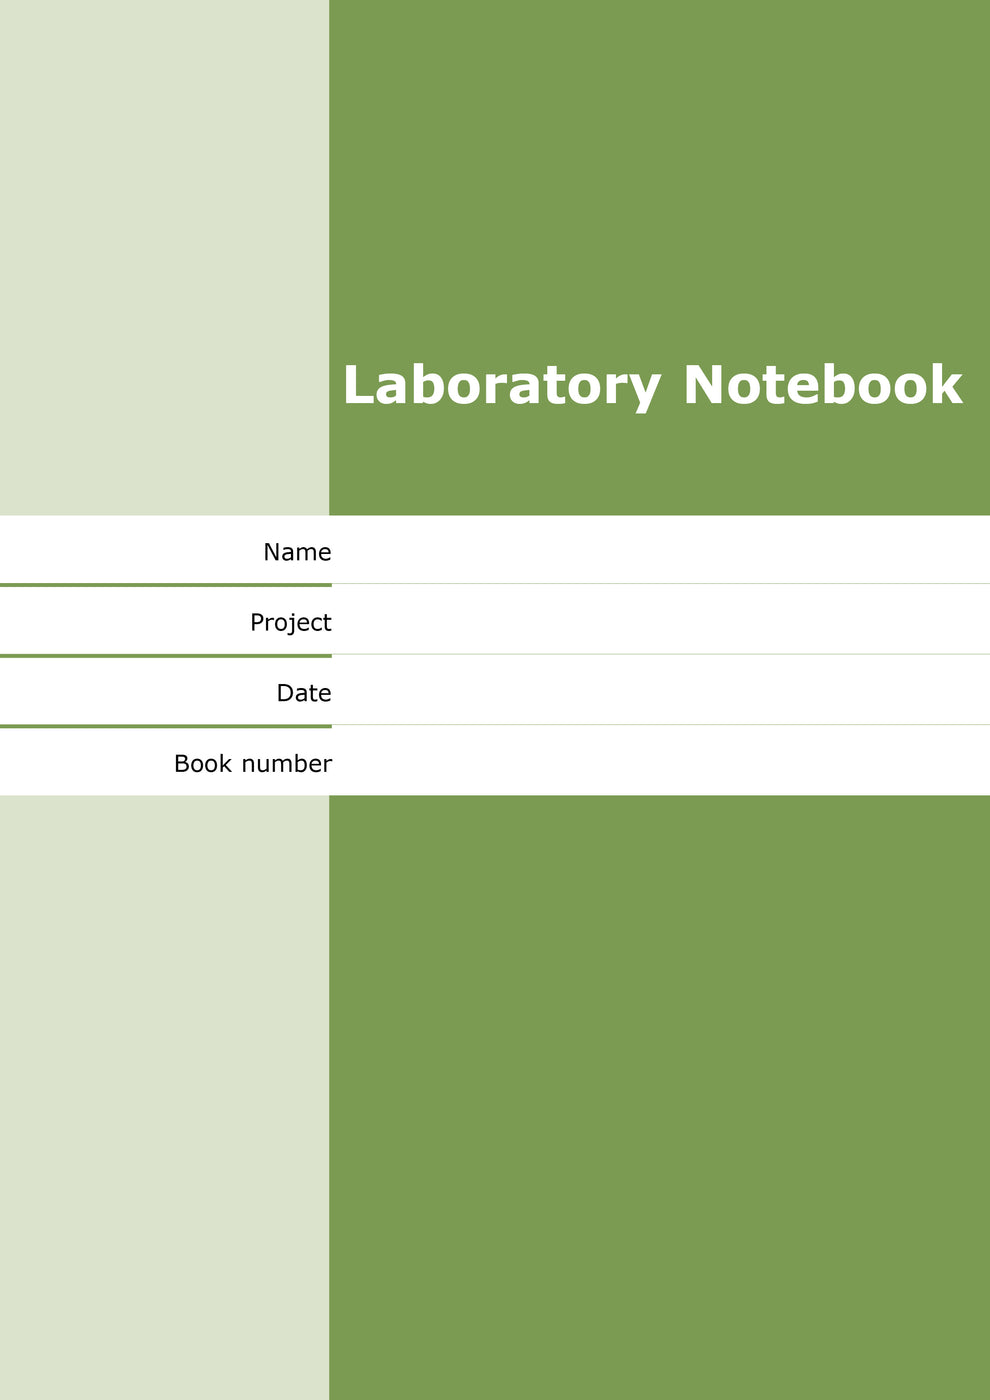 mitchells-laboratory-notebooks-code-a03-a4-laboratory-notebook